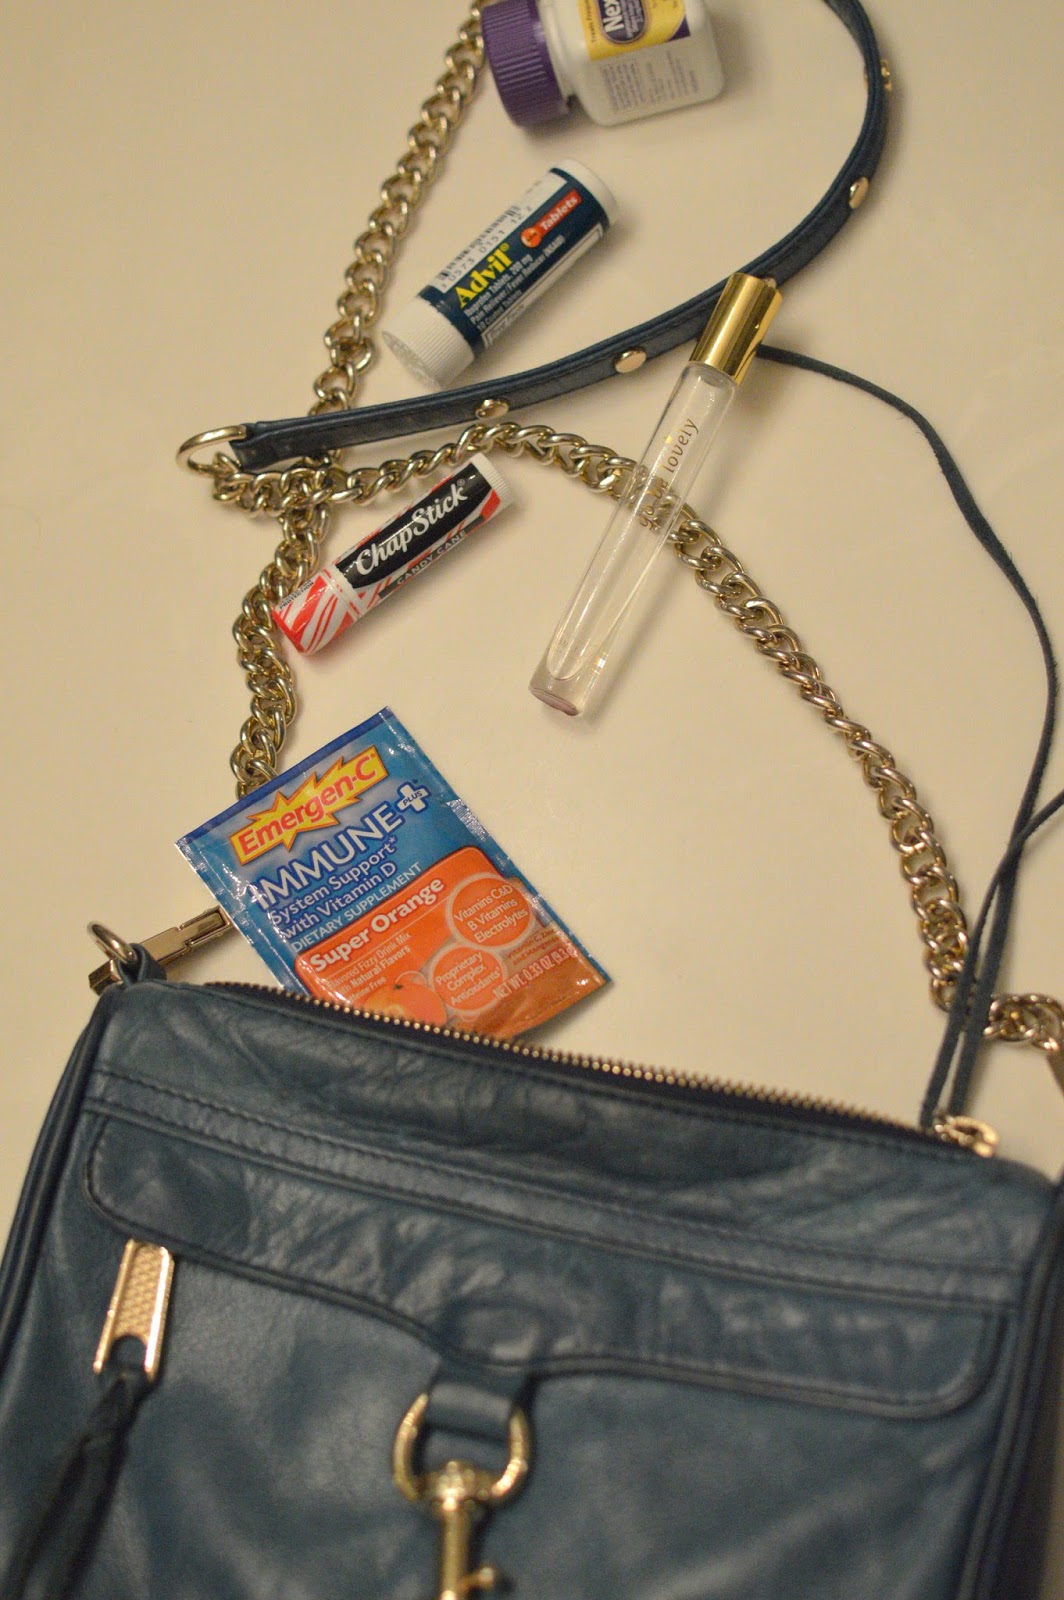 date night purse essentials